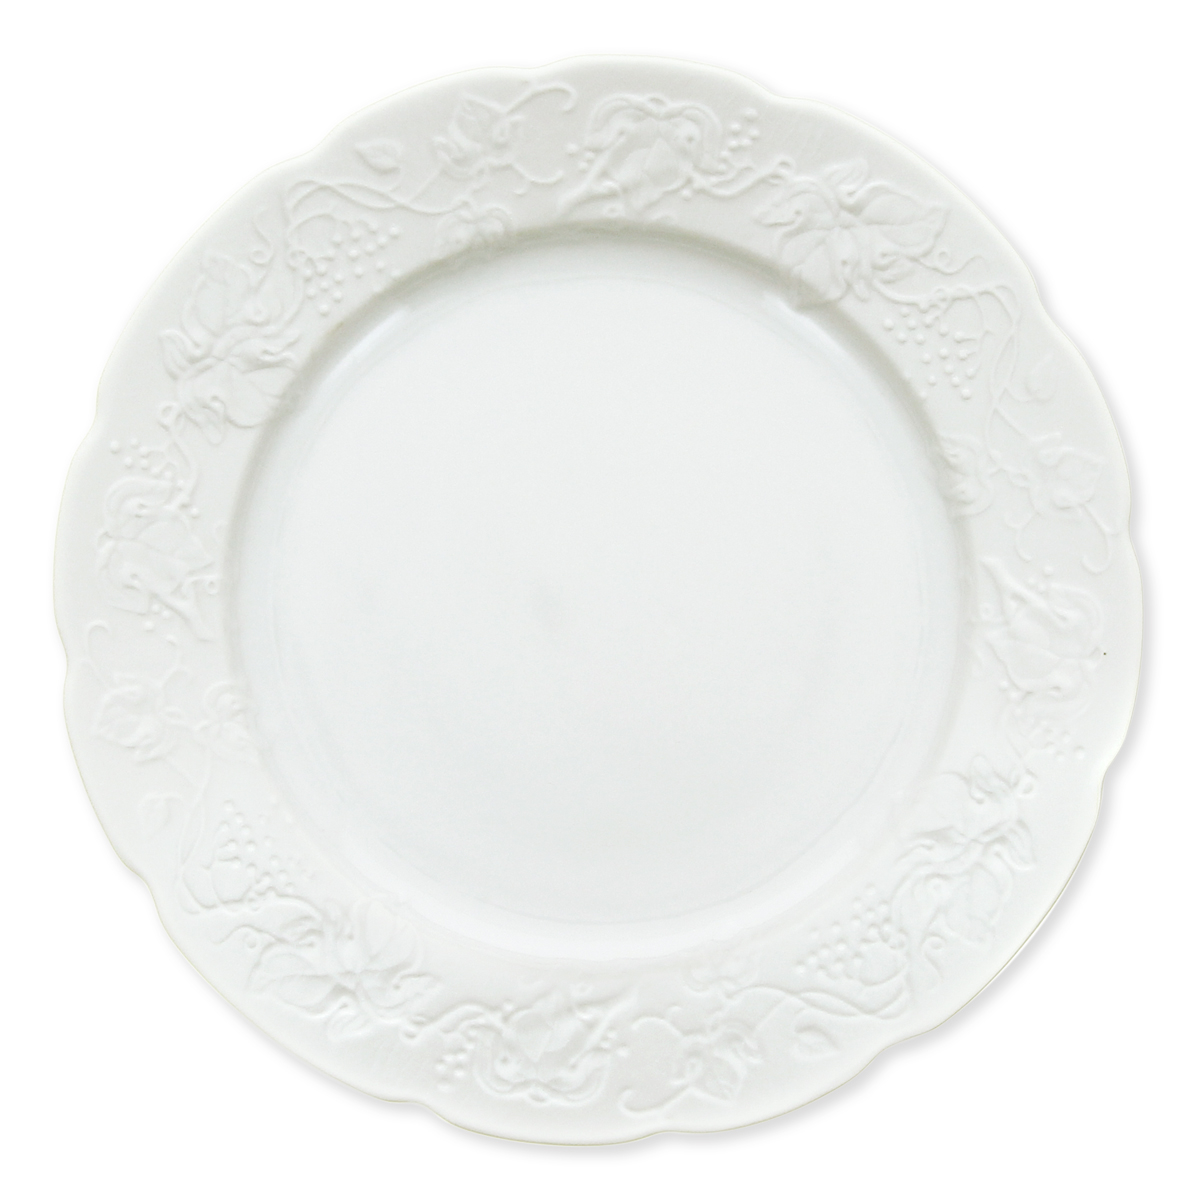 Visuel deMARITZA Assiette plate en porcelaine 26cm